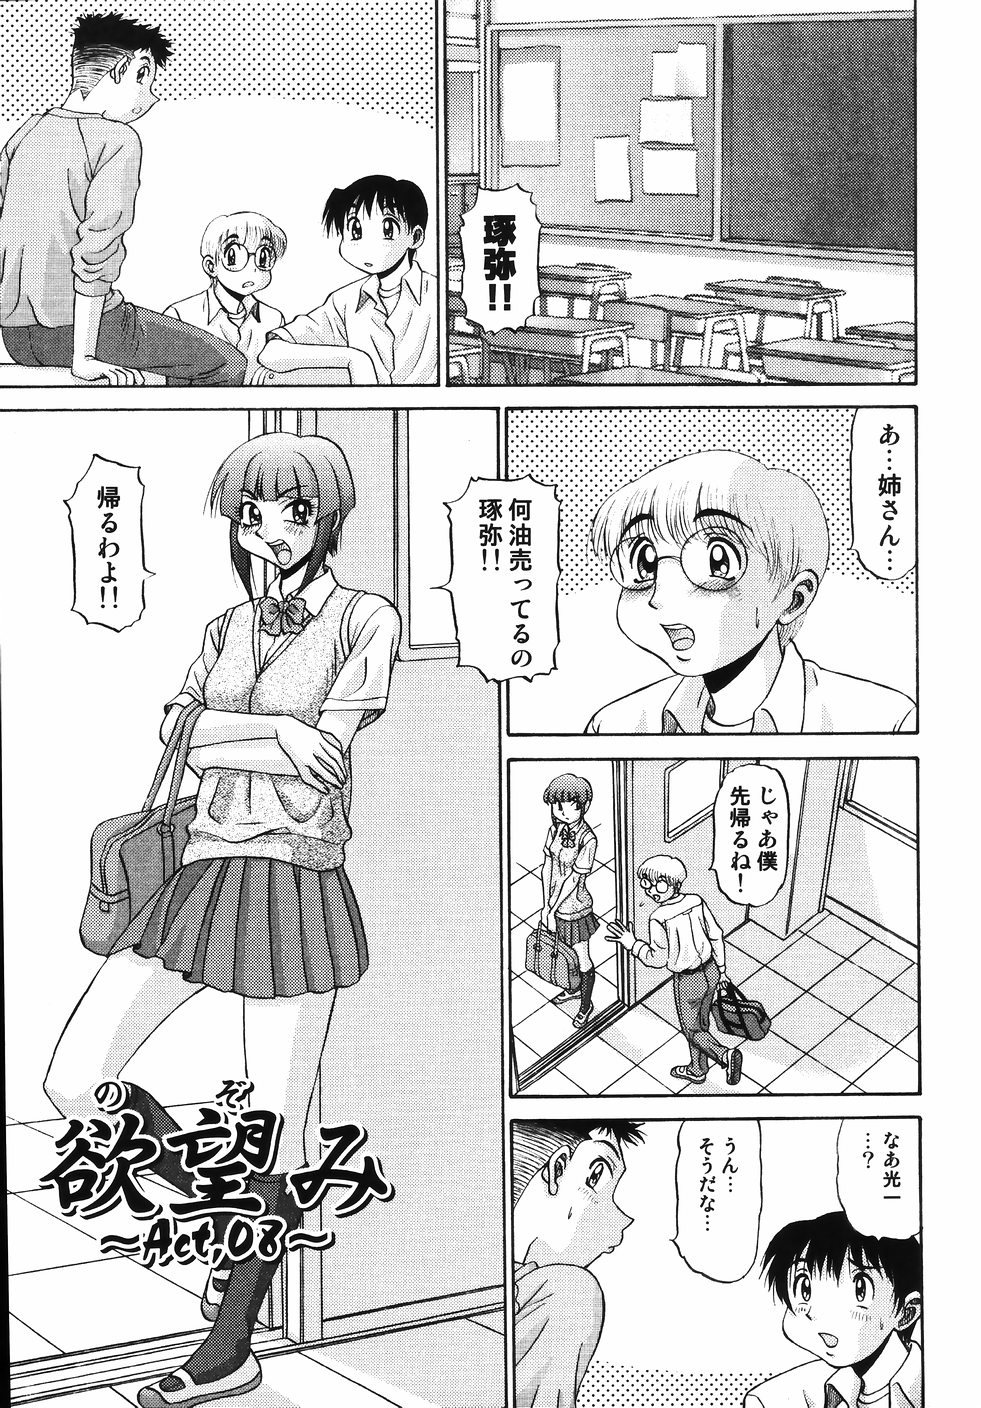 [PJ-1] Nozomi 2 page 9 full